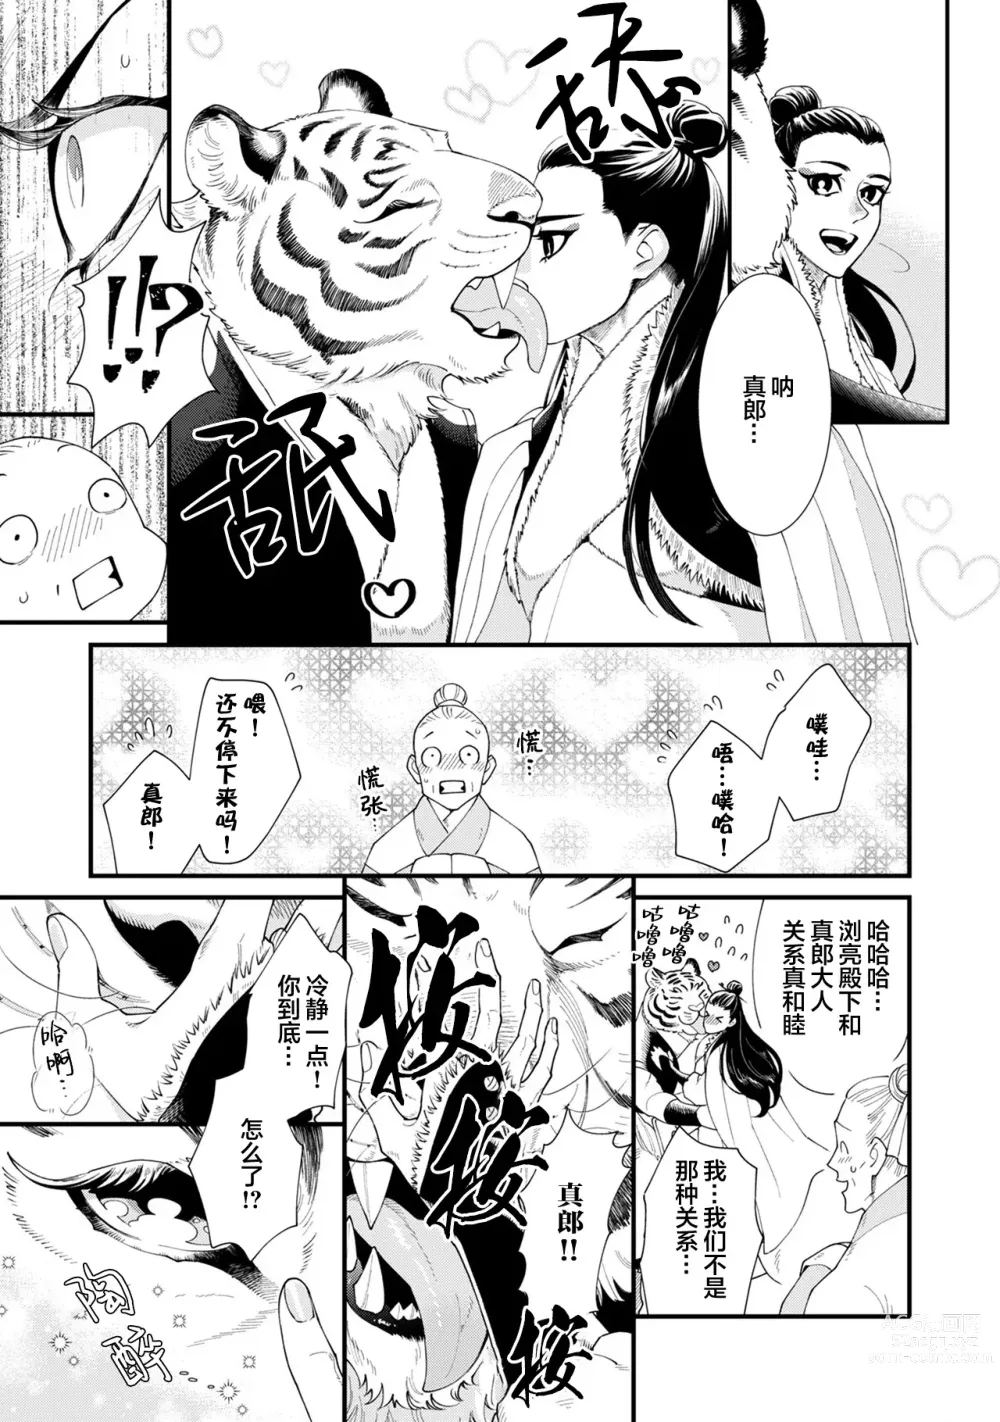 Page 9 of manga JINKO NO HARU